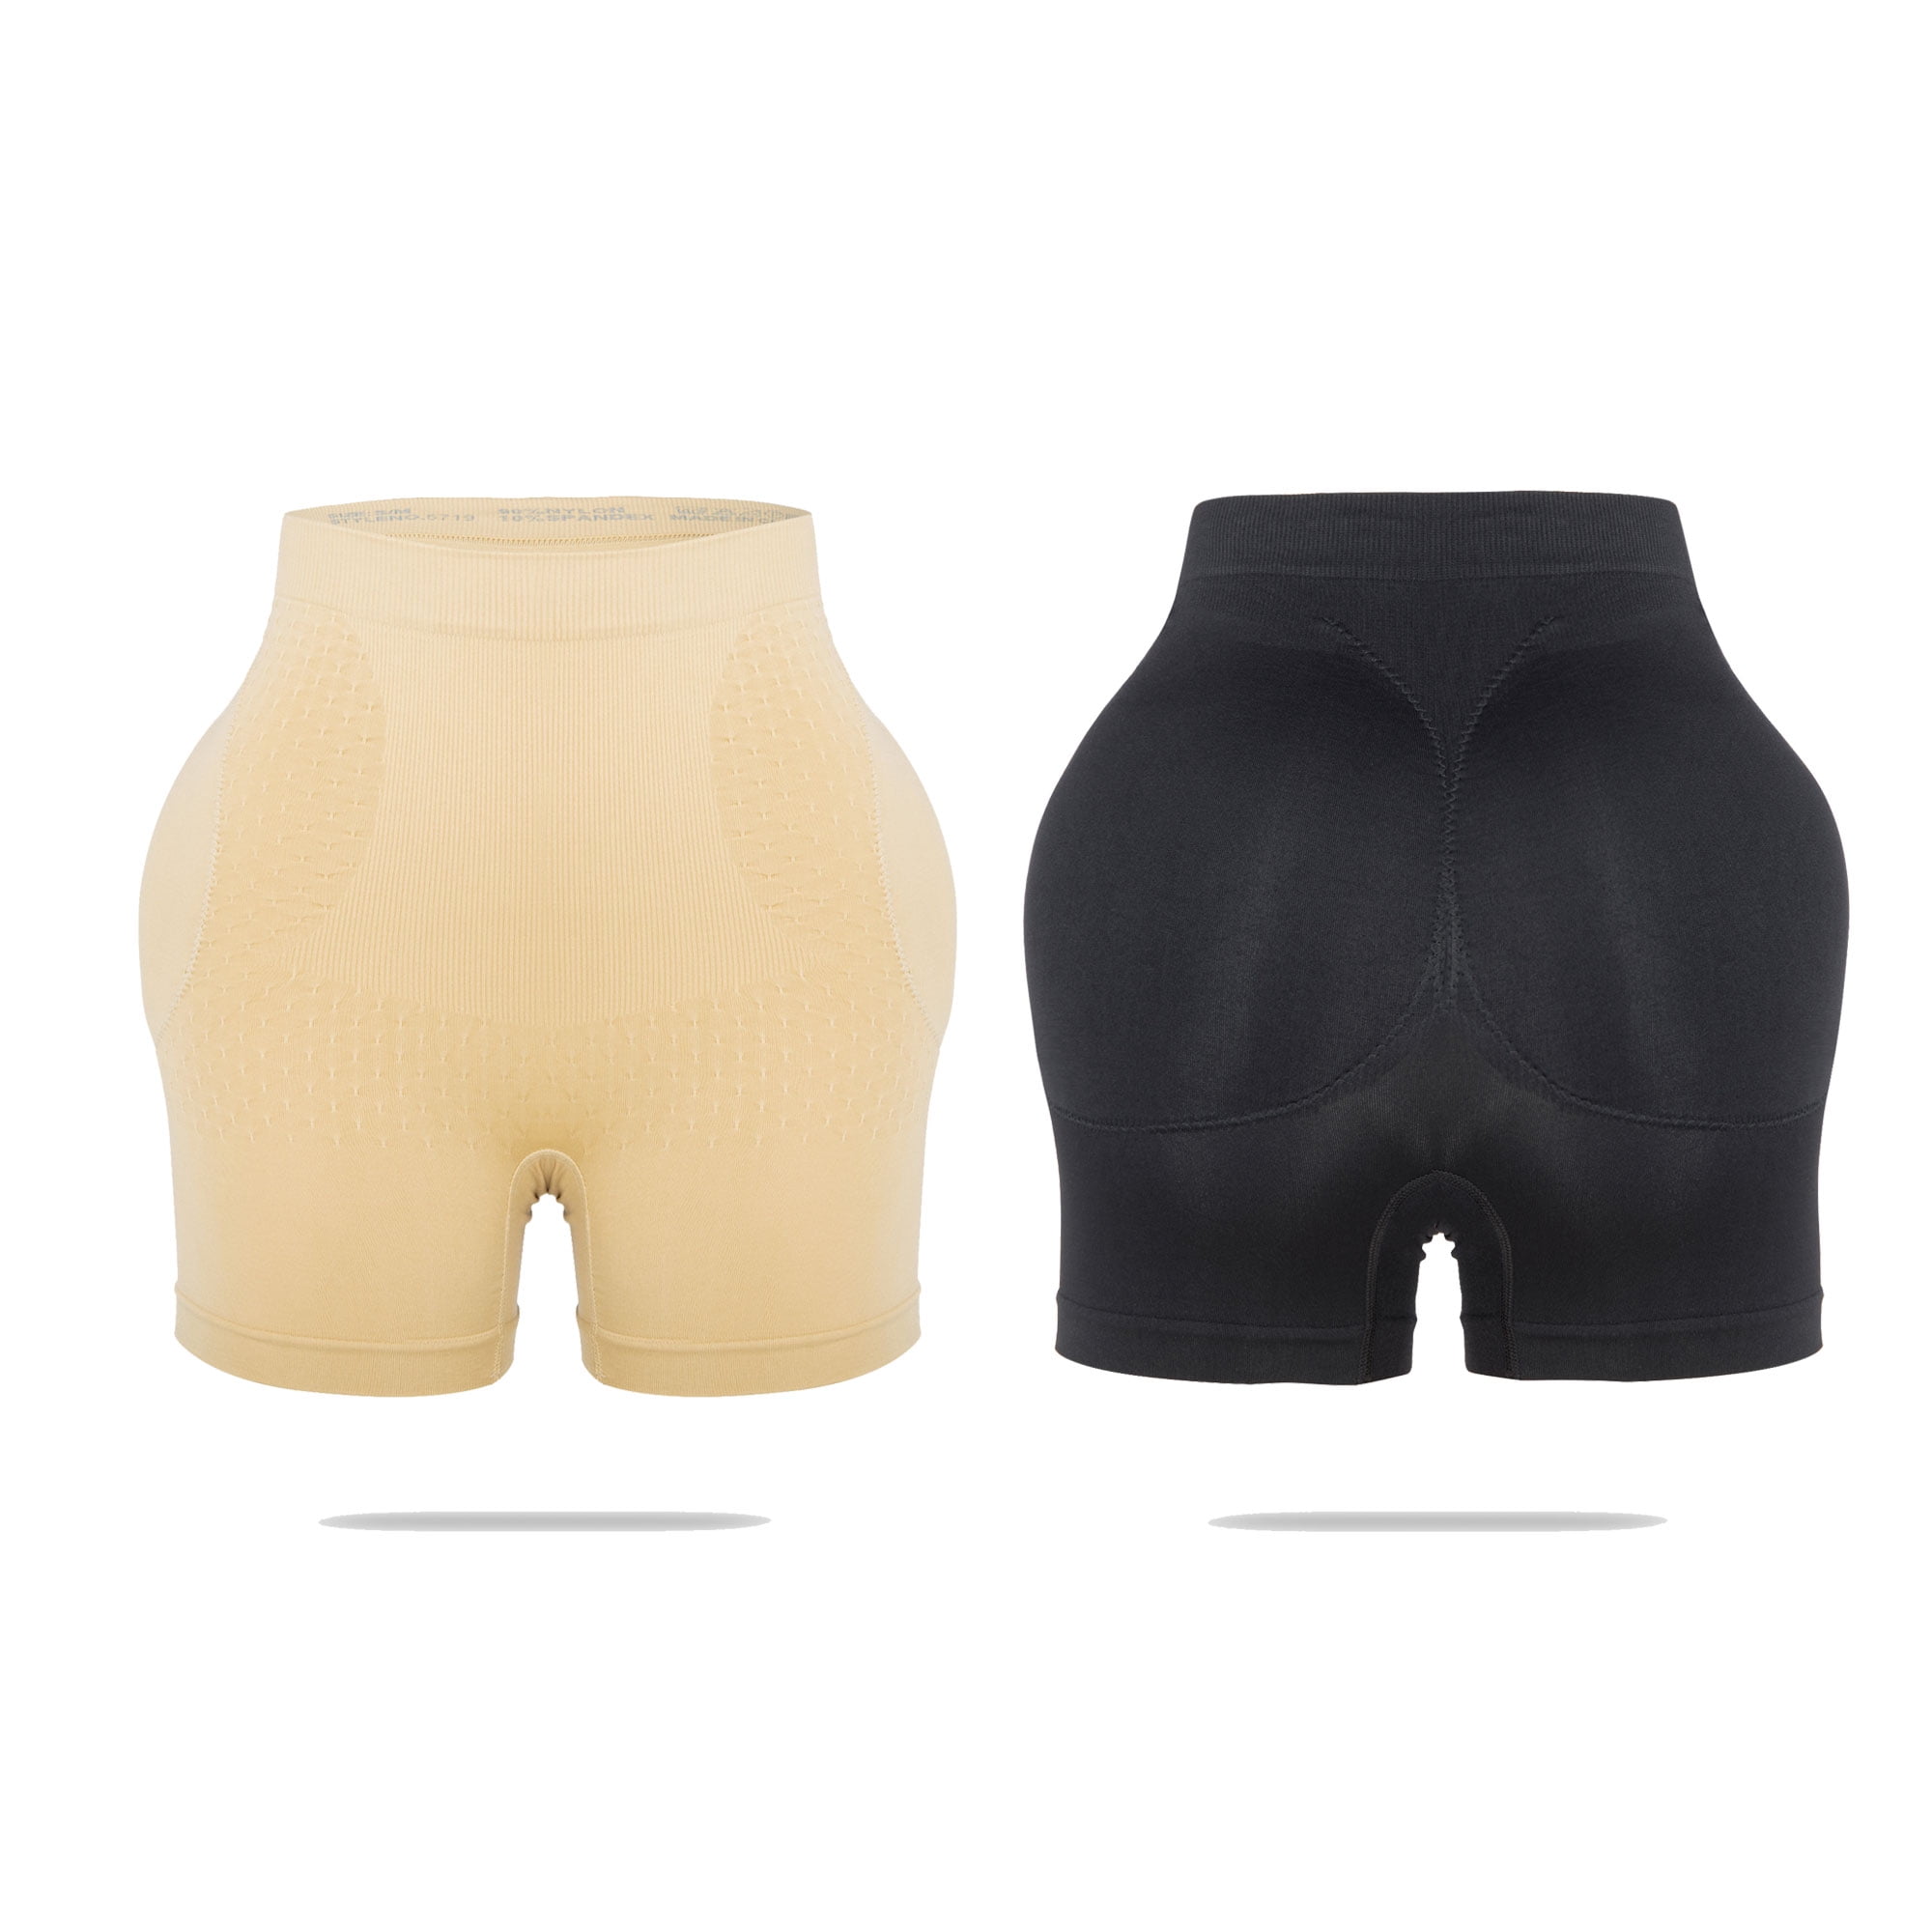 Shapewear Padded Butt Lifter Panties High Waist Trainer for Women